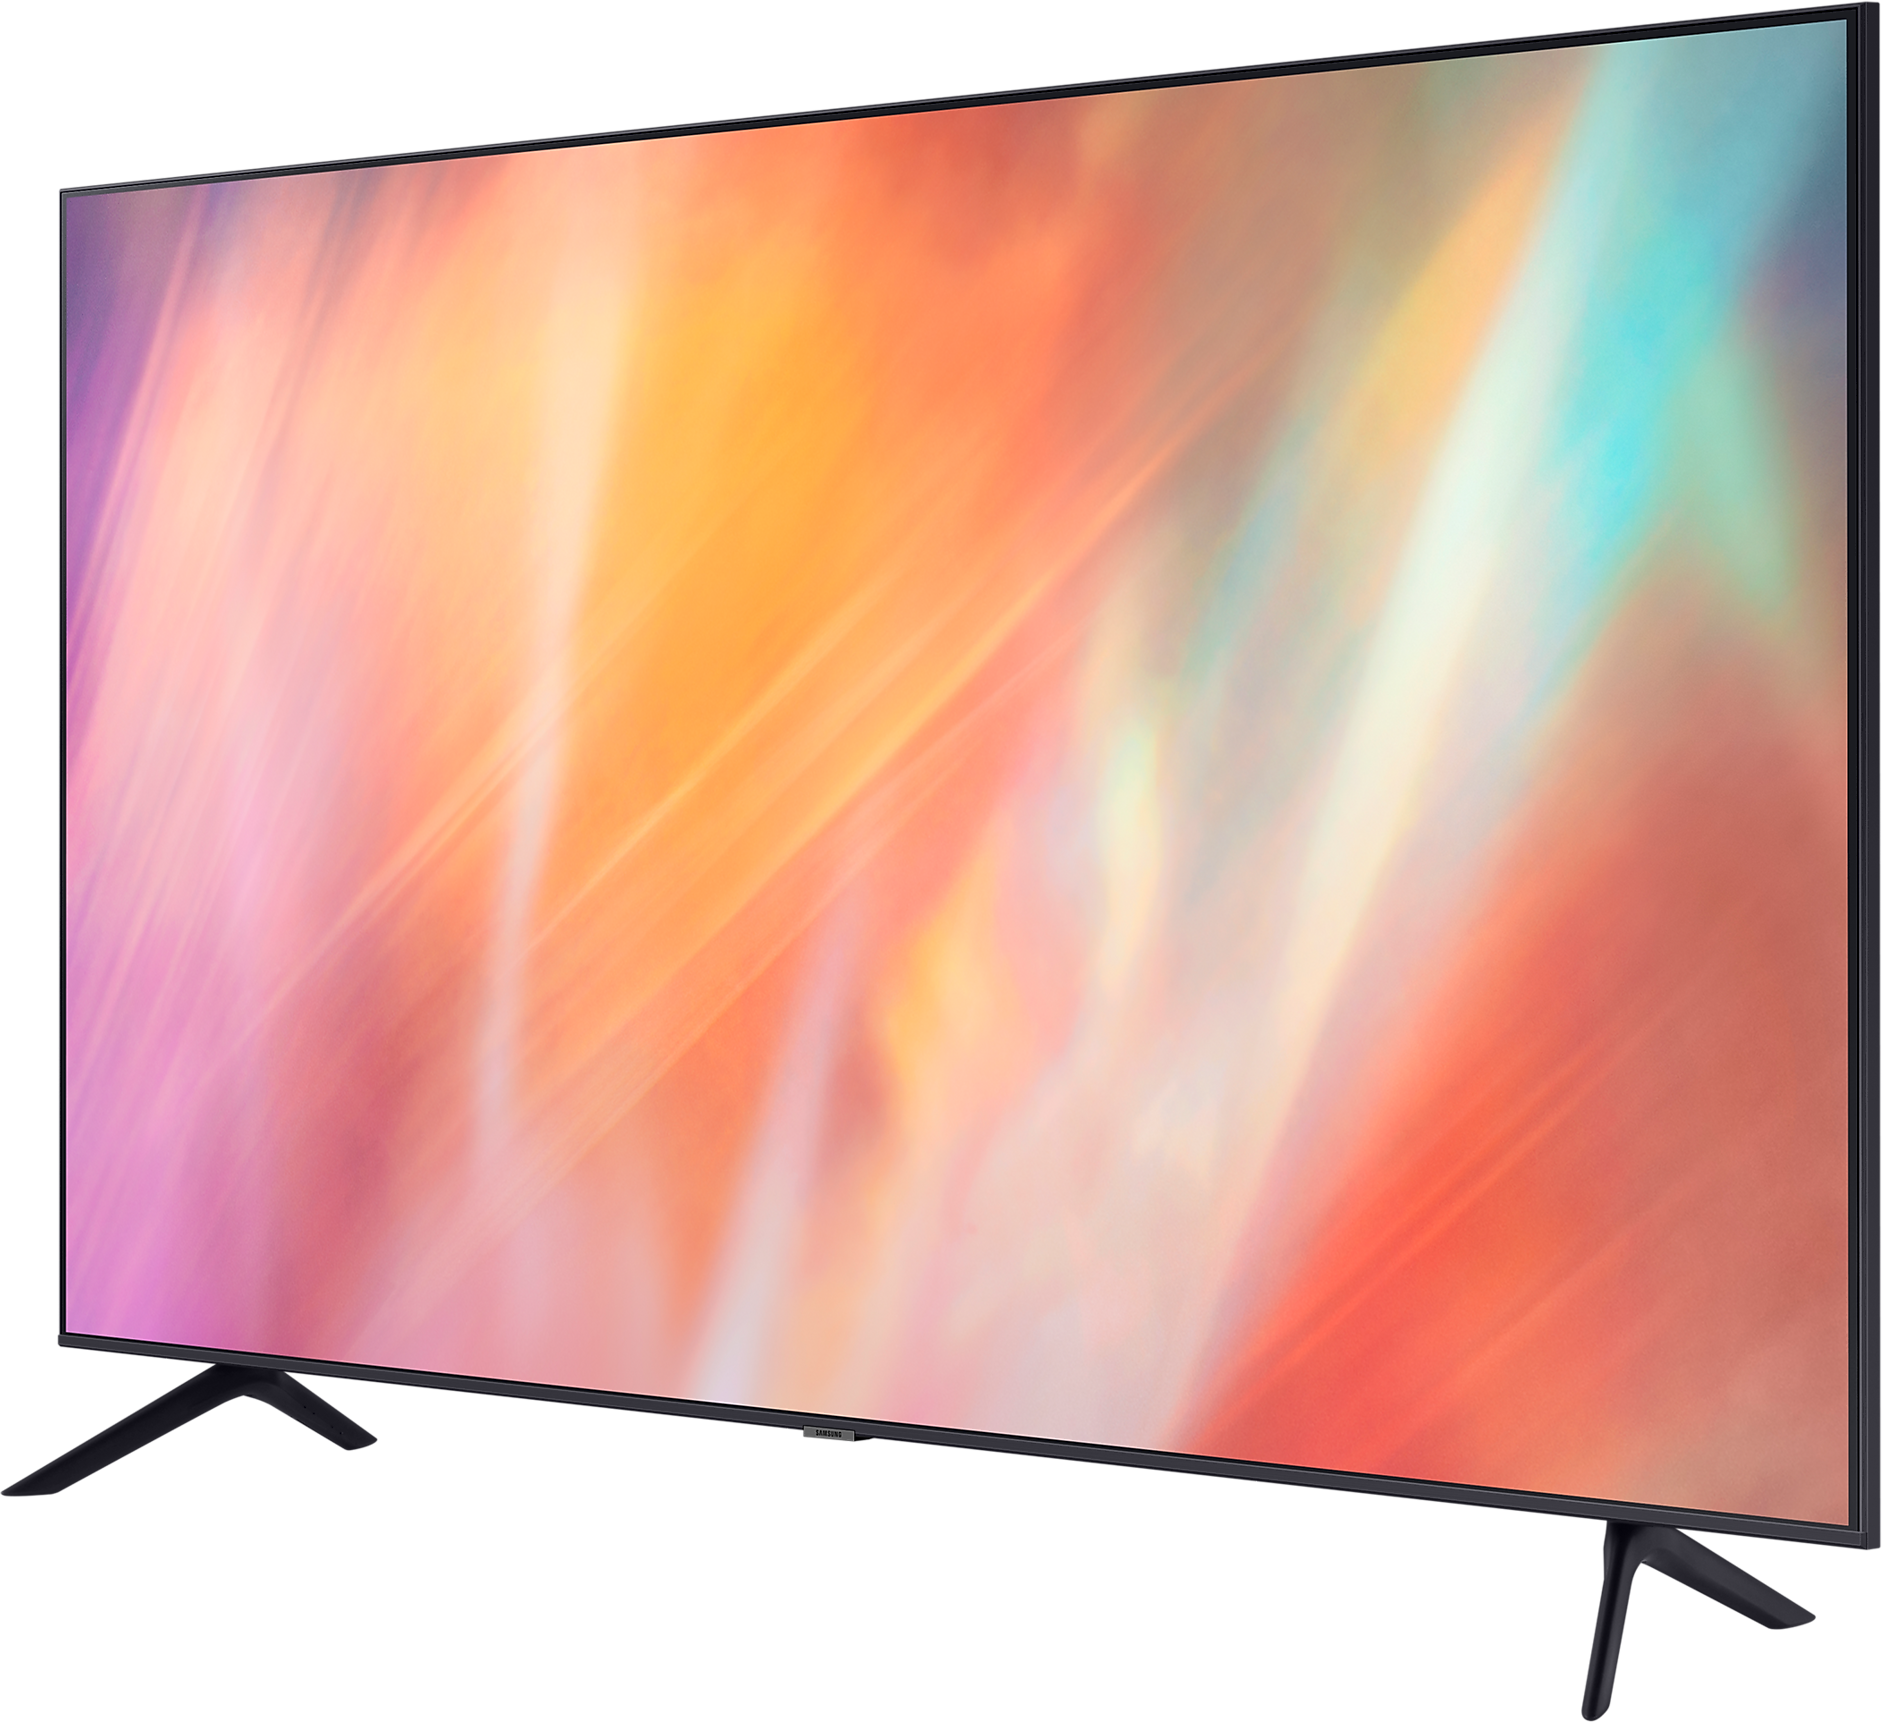 43" Телевизор Samsung UE43AU7100U 2021 LED HDR QLED Crystal UHD